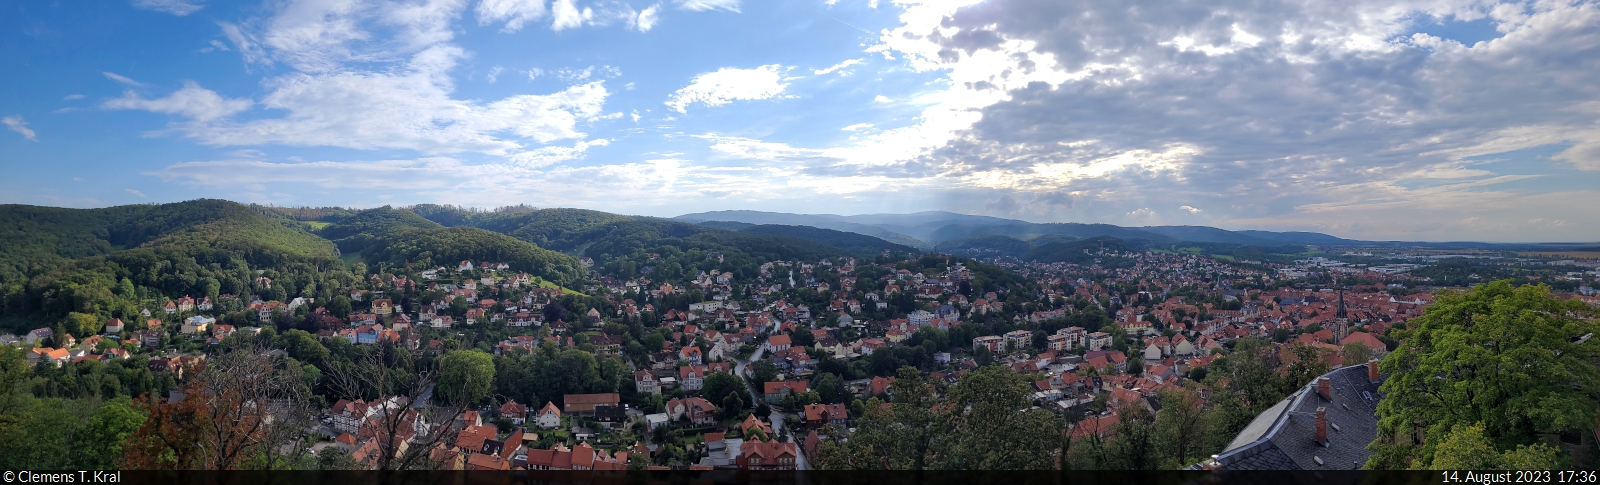 Panorama vom Schloss auf Wernigerode, die bunte Stadt am Harz.

🕓 14.8.2023 | 17:36 Uhr